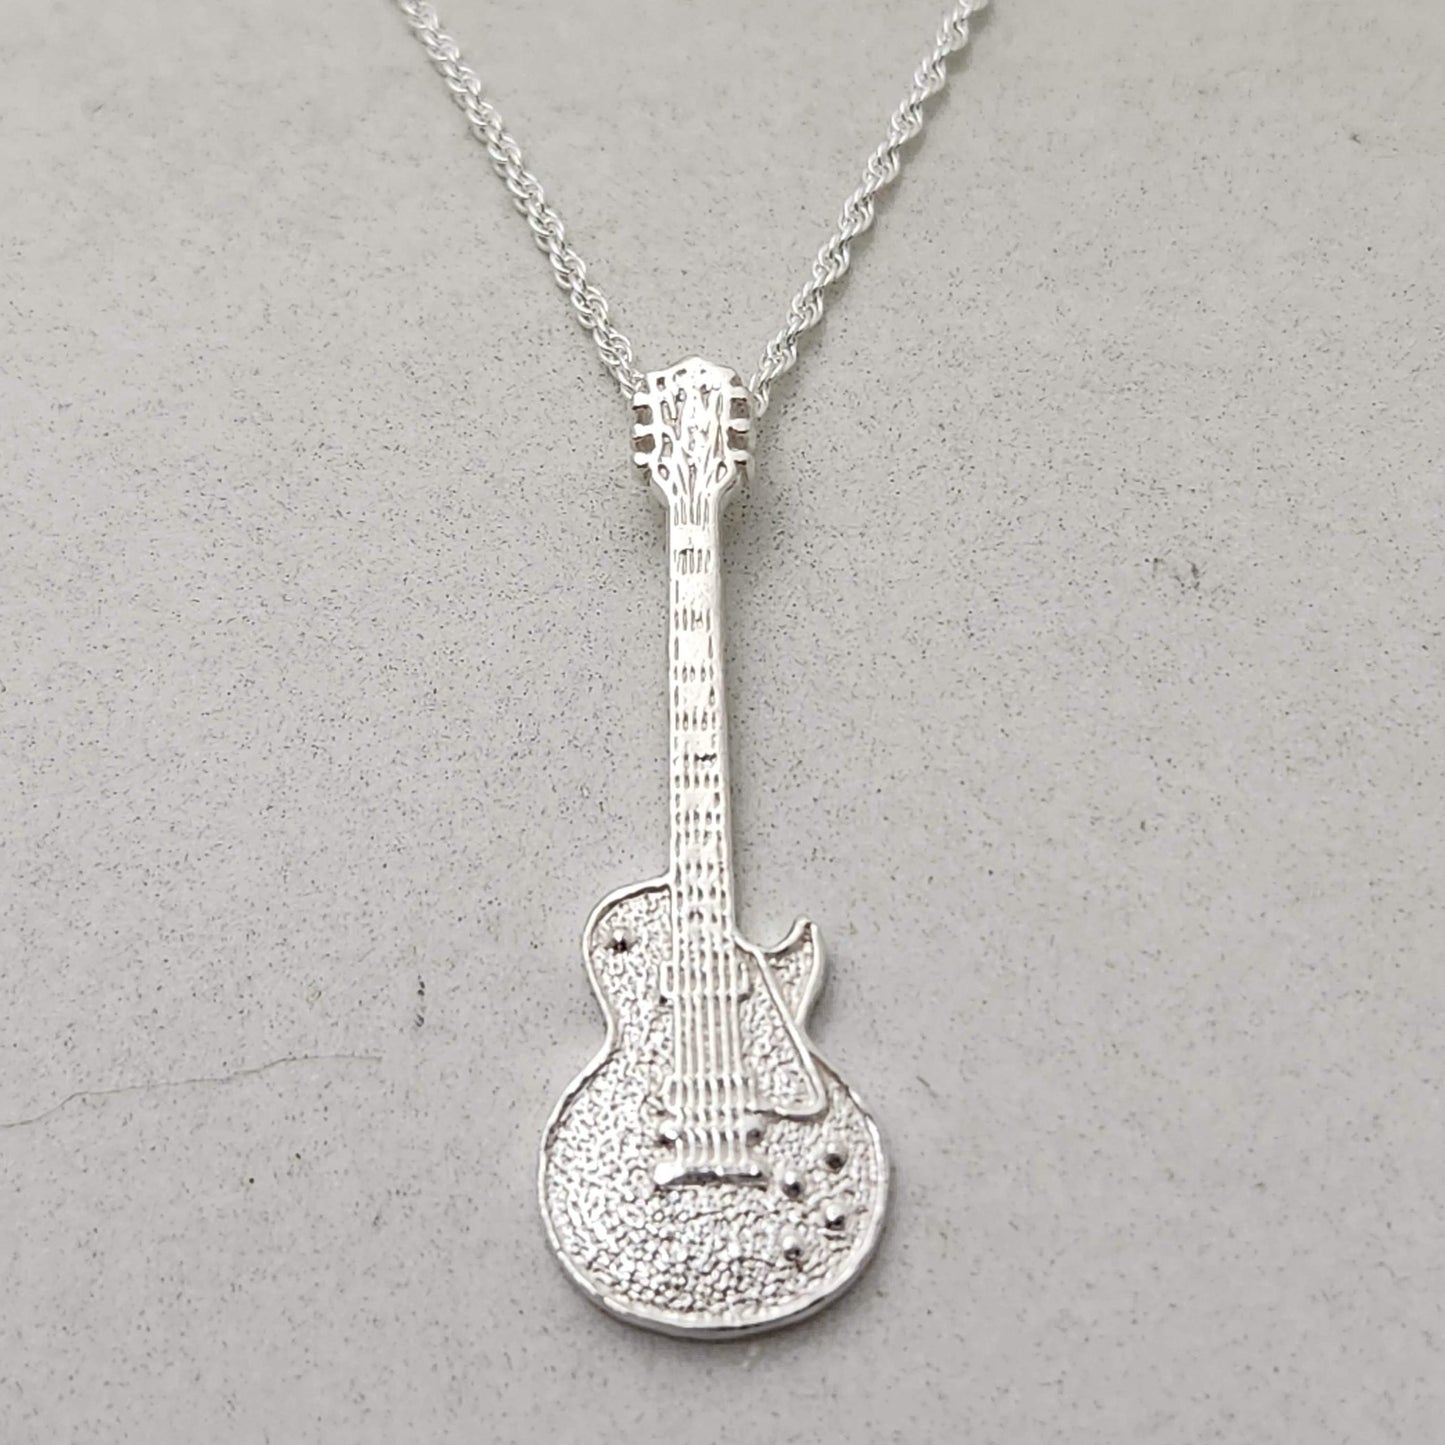 Les Paul Guitar Pendant / Necklace  / Charm - Silver & Gold